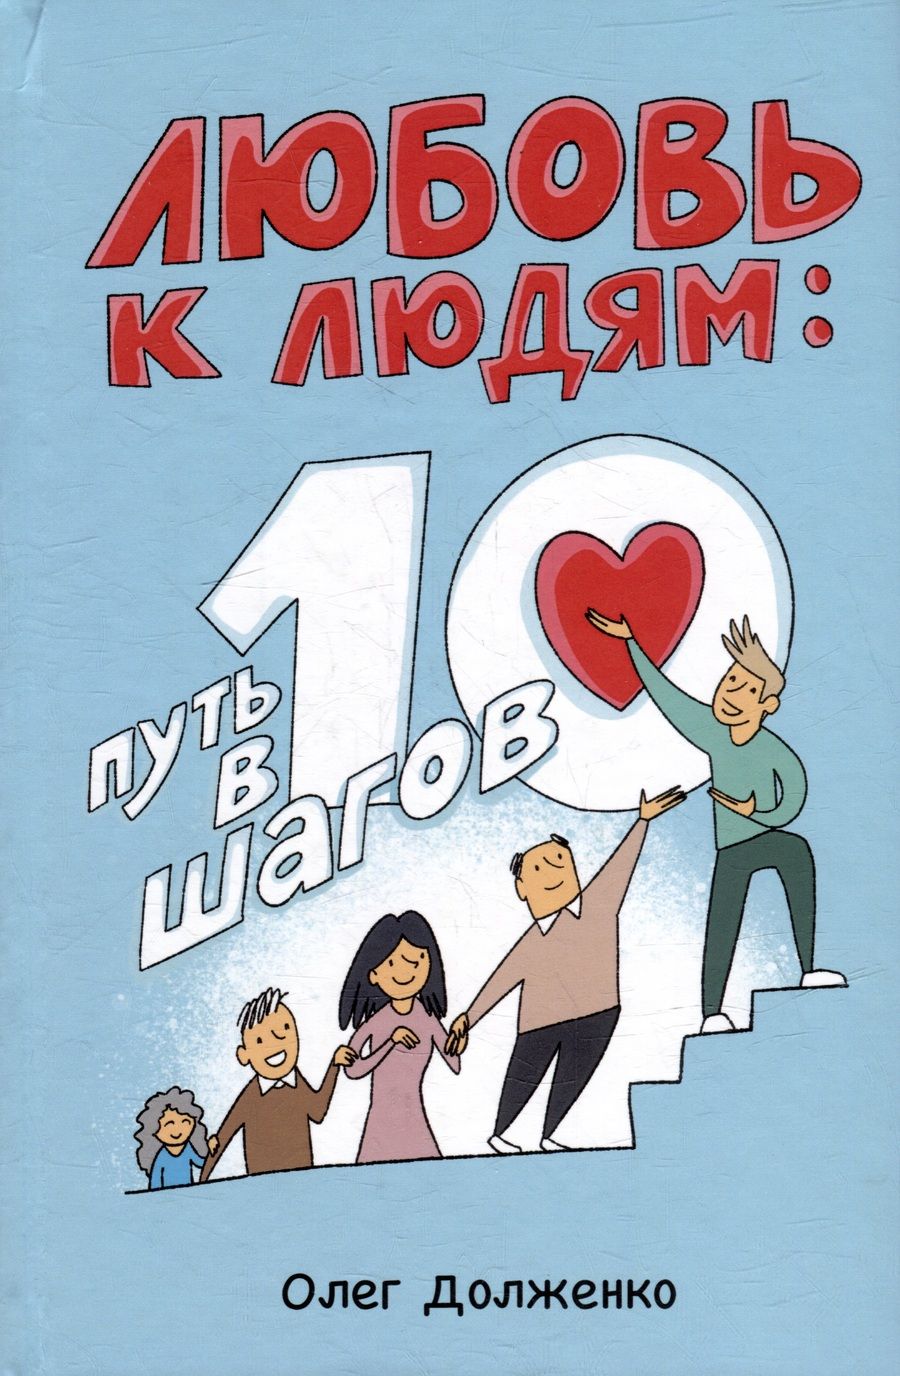 Обложка книги "Долженко: Любовь к людям. Путь в 10 шагов"